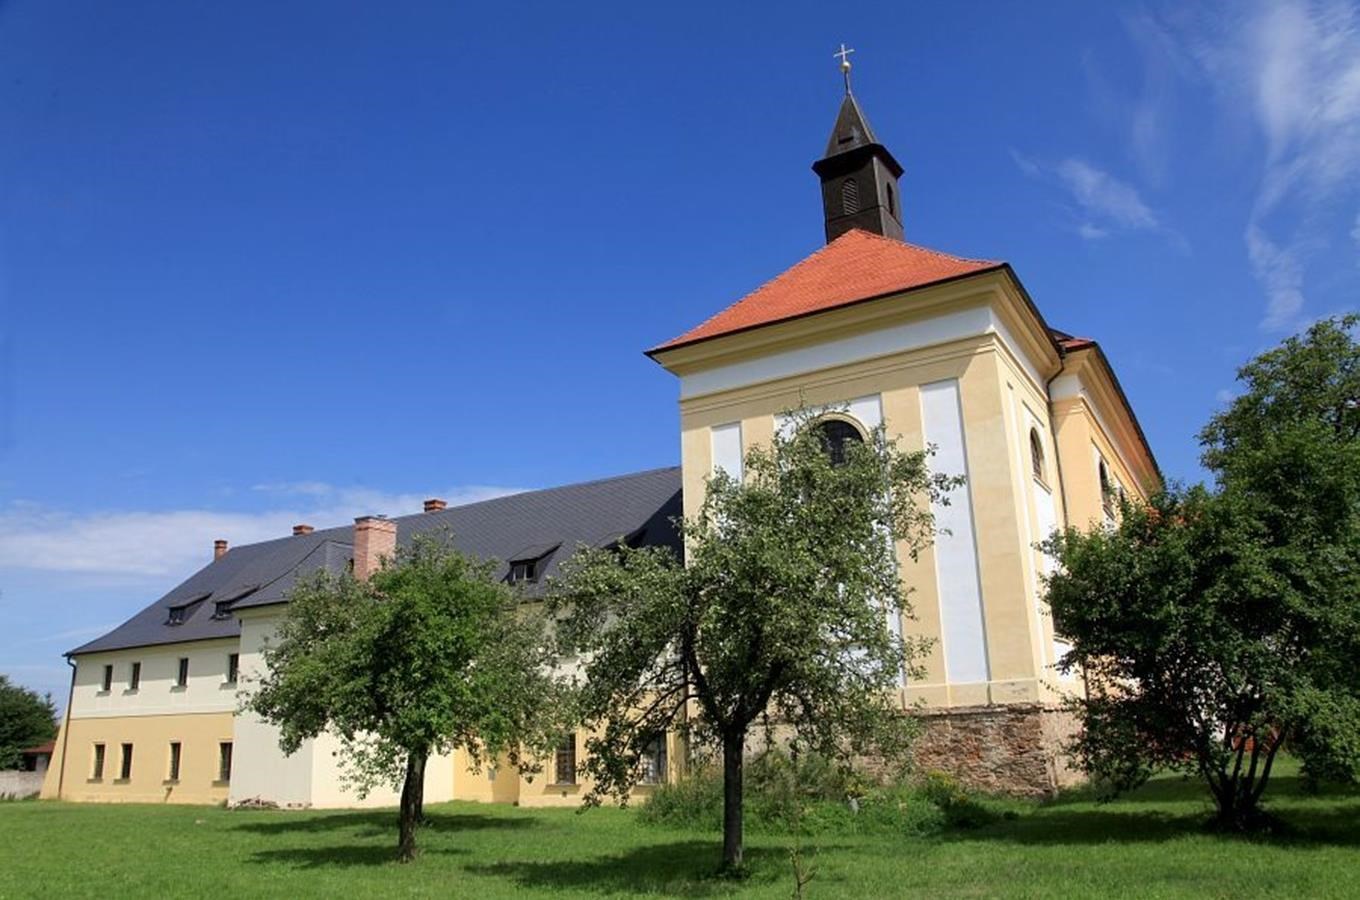 Františkánský klášter Zásmuky